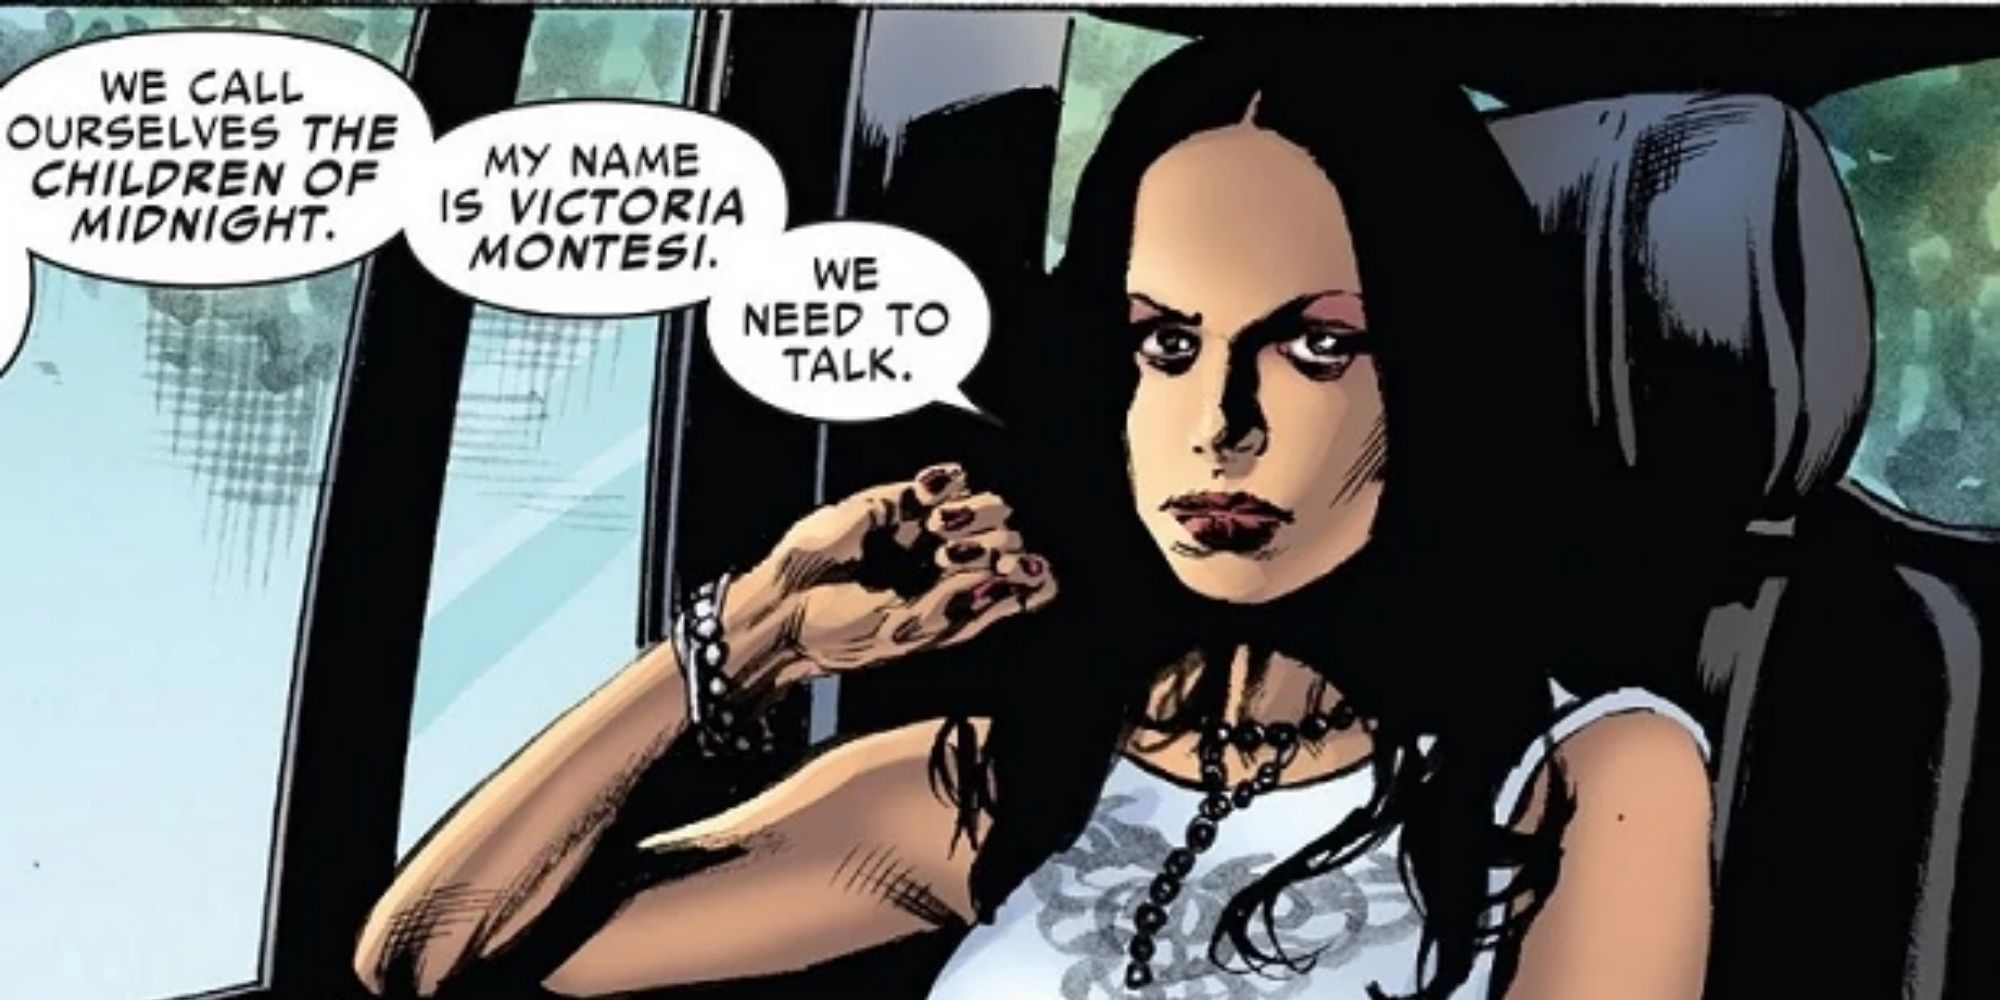 Victoria Montesi from Marvel Comics